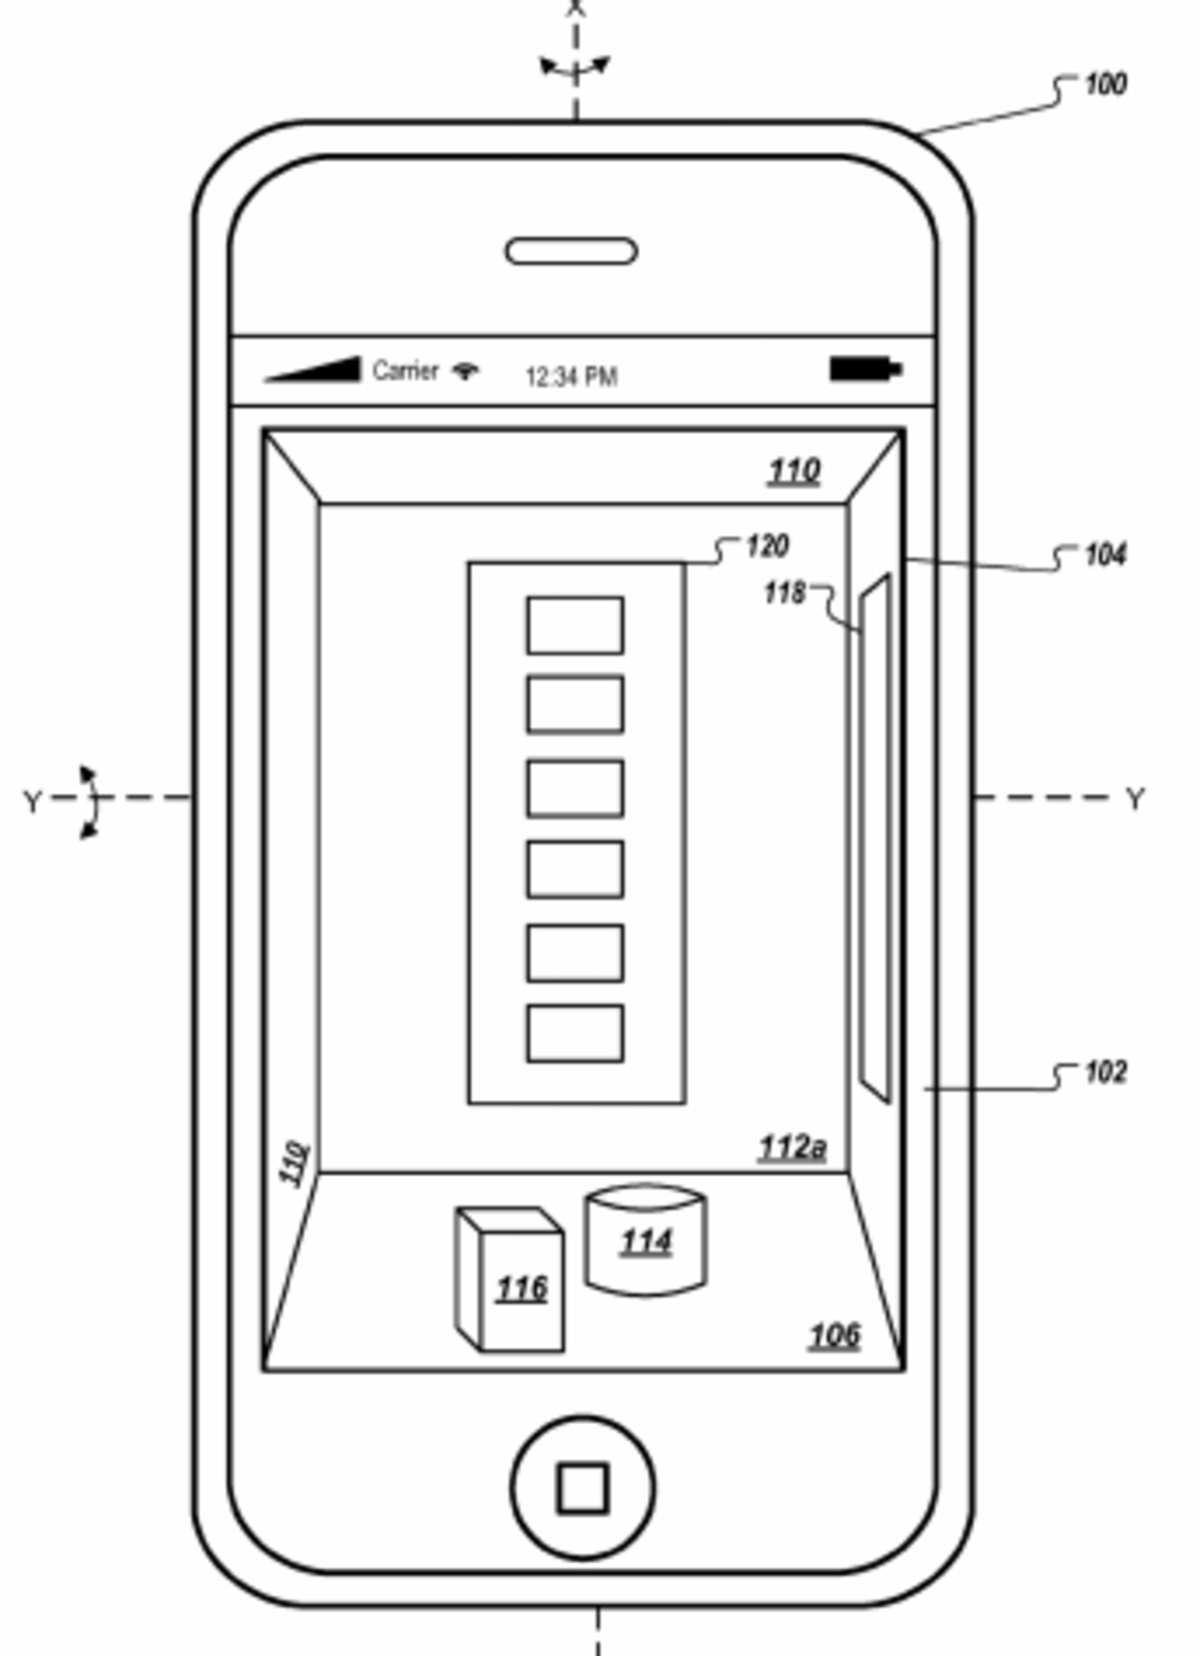 patente-interfaz-3d-iphone-3